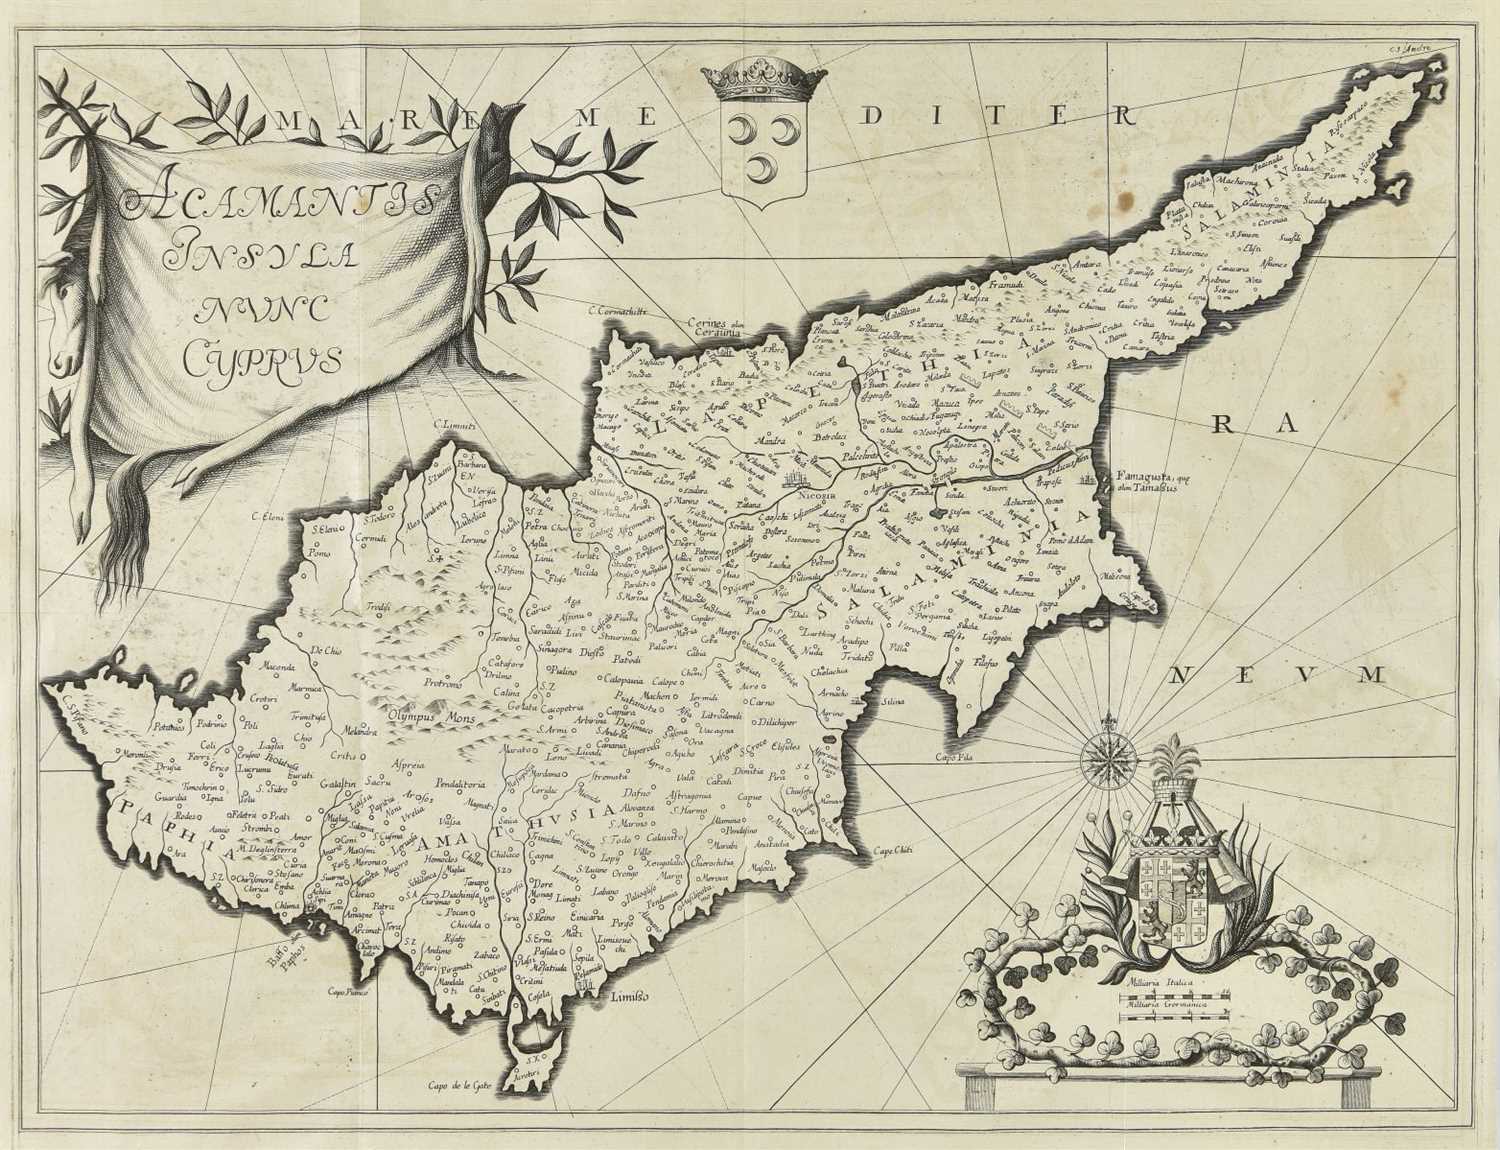 Lot 36 - Jauna (Dominique). Histoire de Chypre, de Jerusalem, d'Arménie, et d'Egypte, 1747